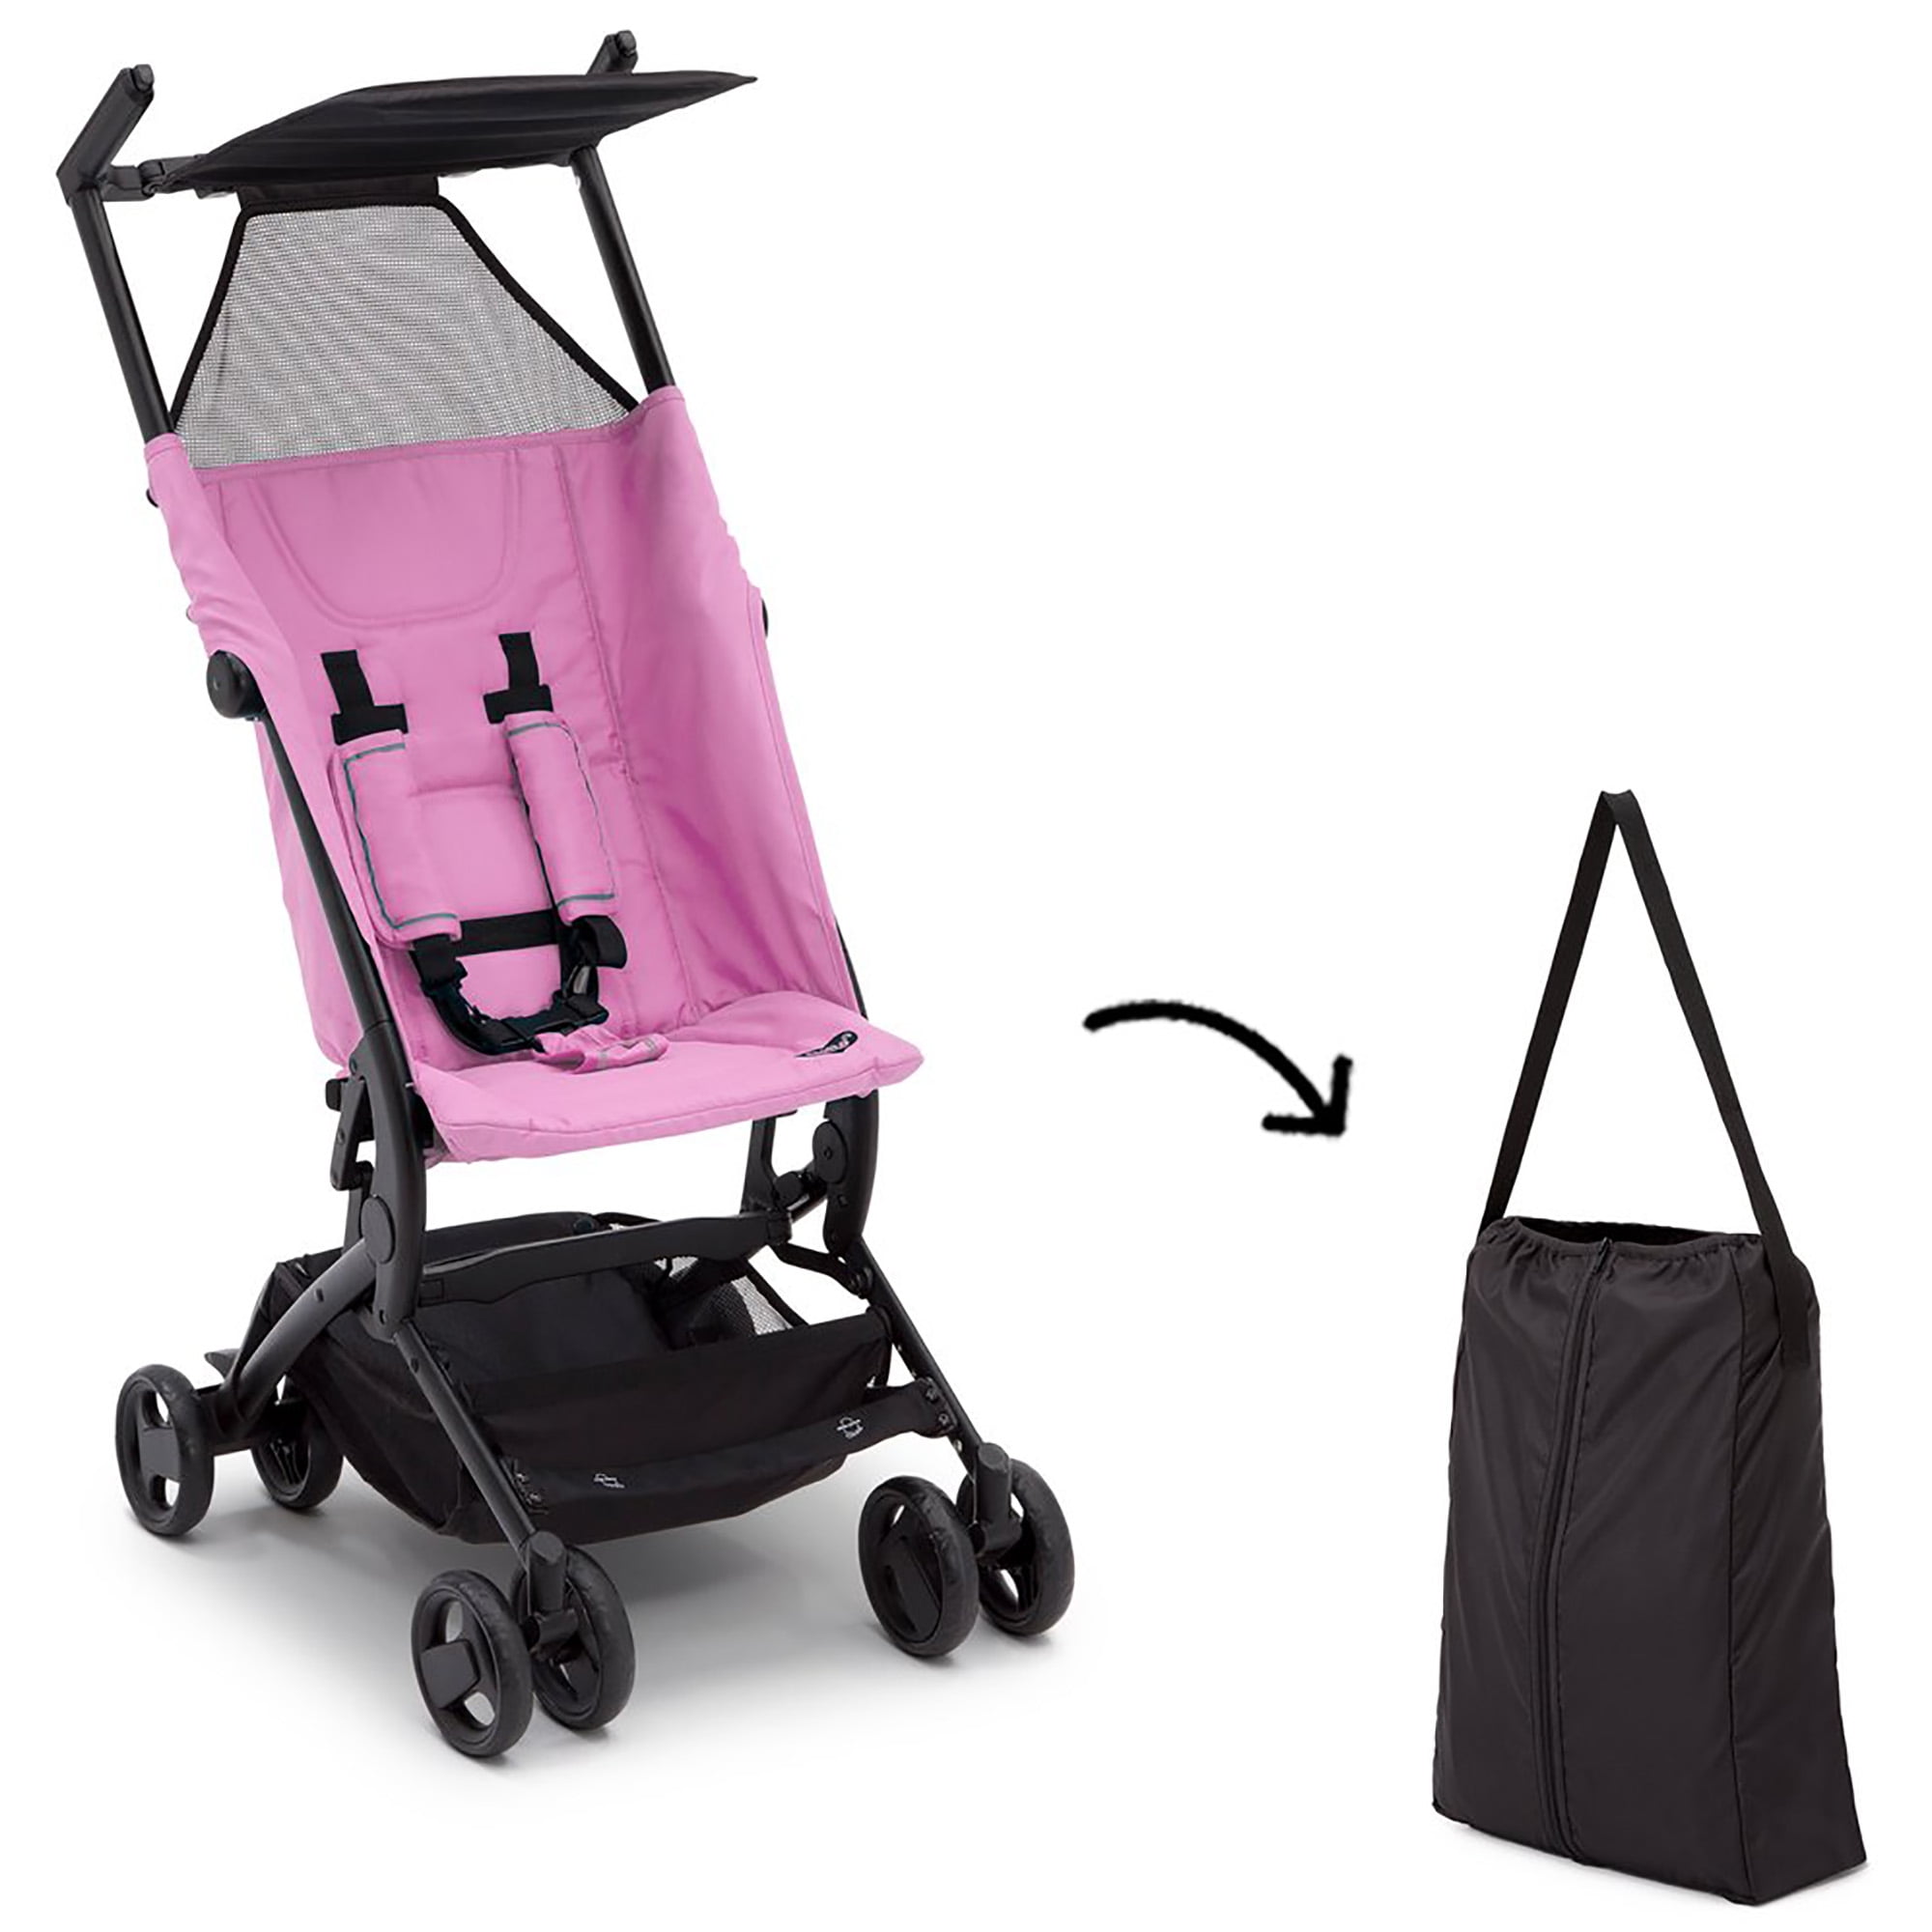 the clutch stroller by delta children